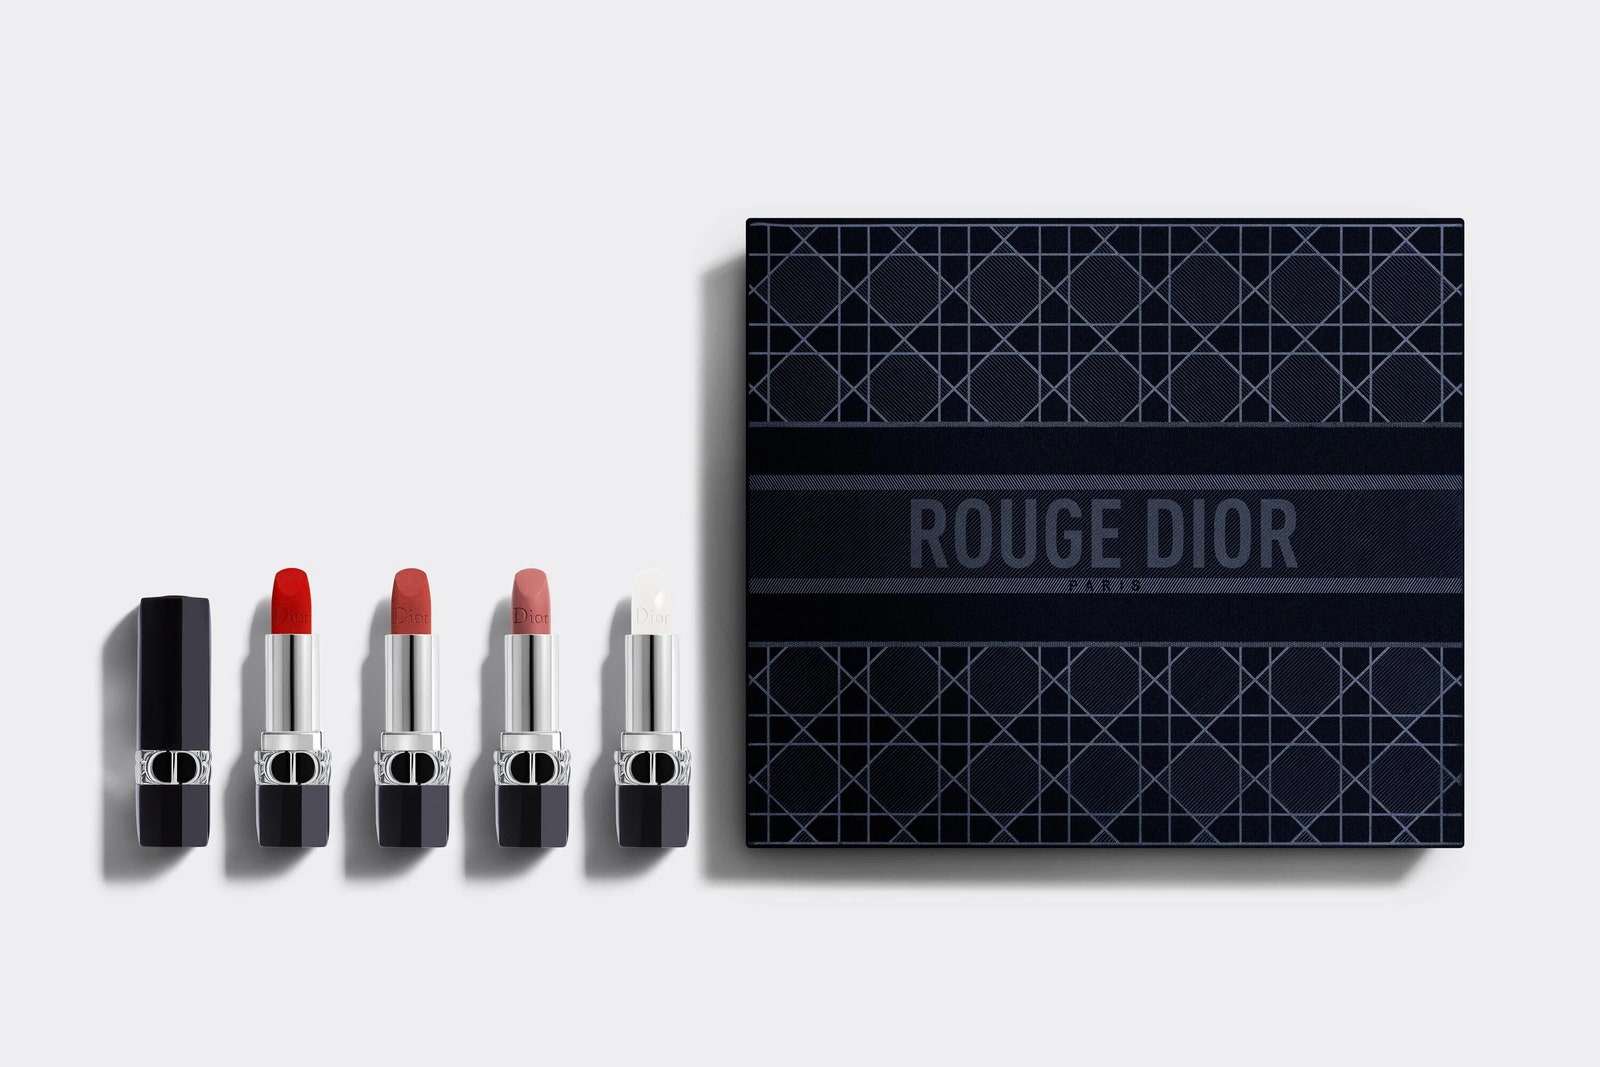 Коллекционный набор из четырех помад Rouge Dior.